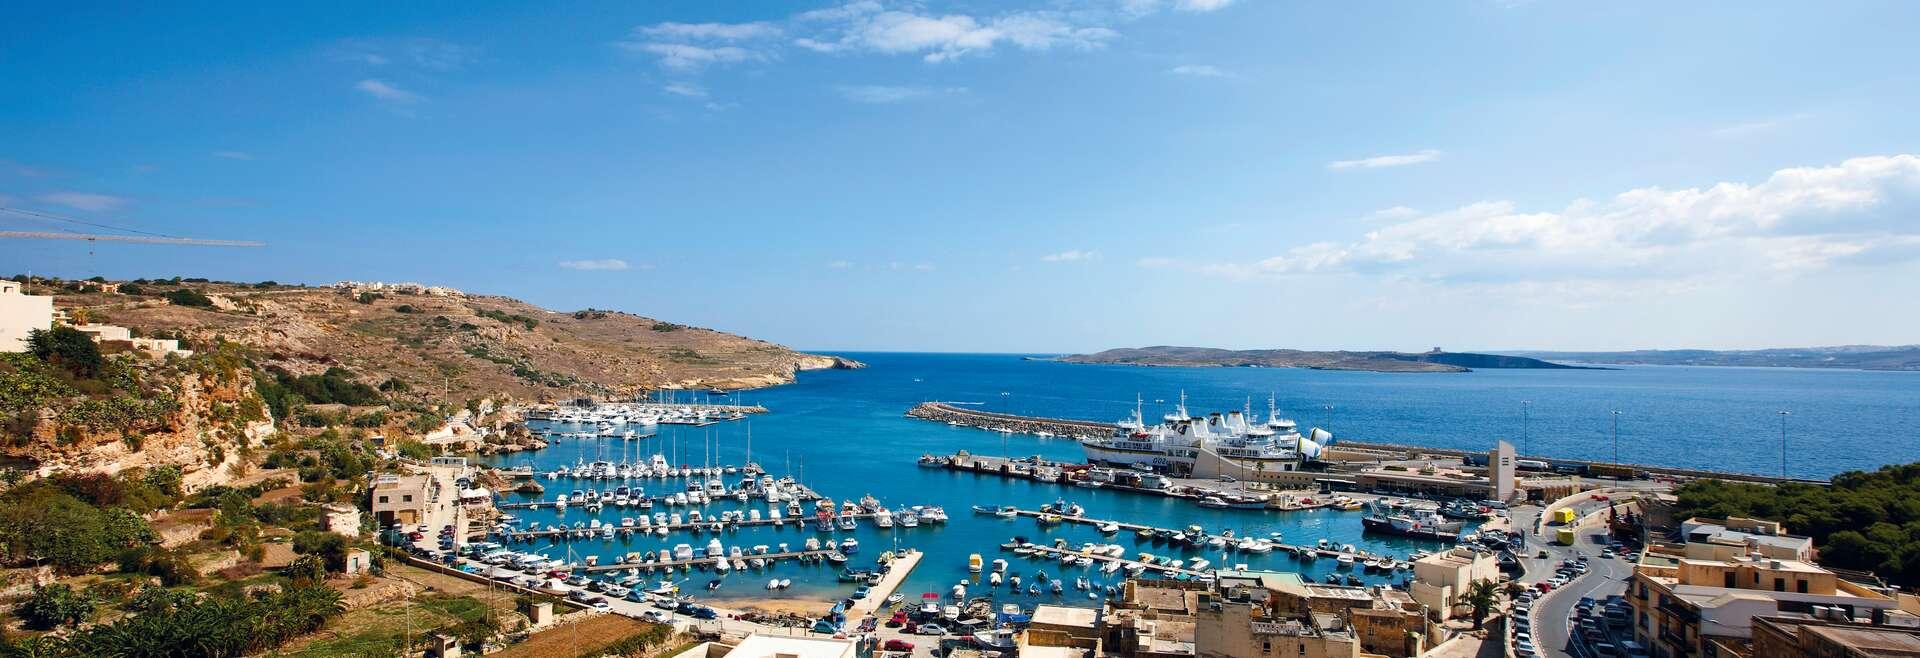 Séjour linguistique Malte, Gozo, harbour